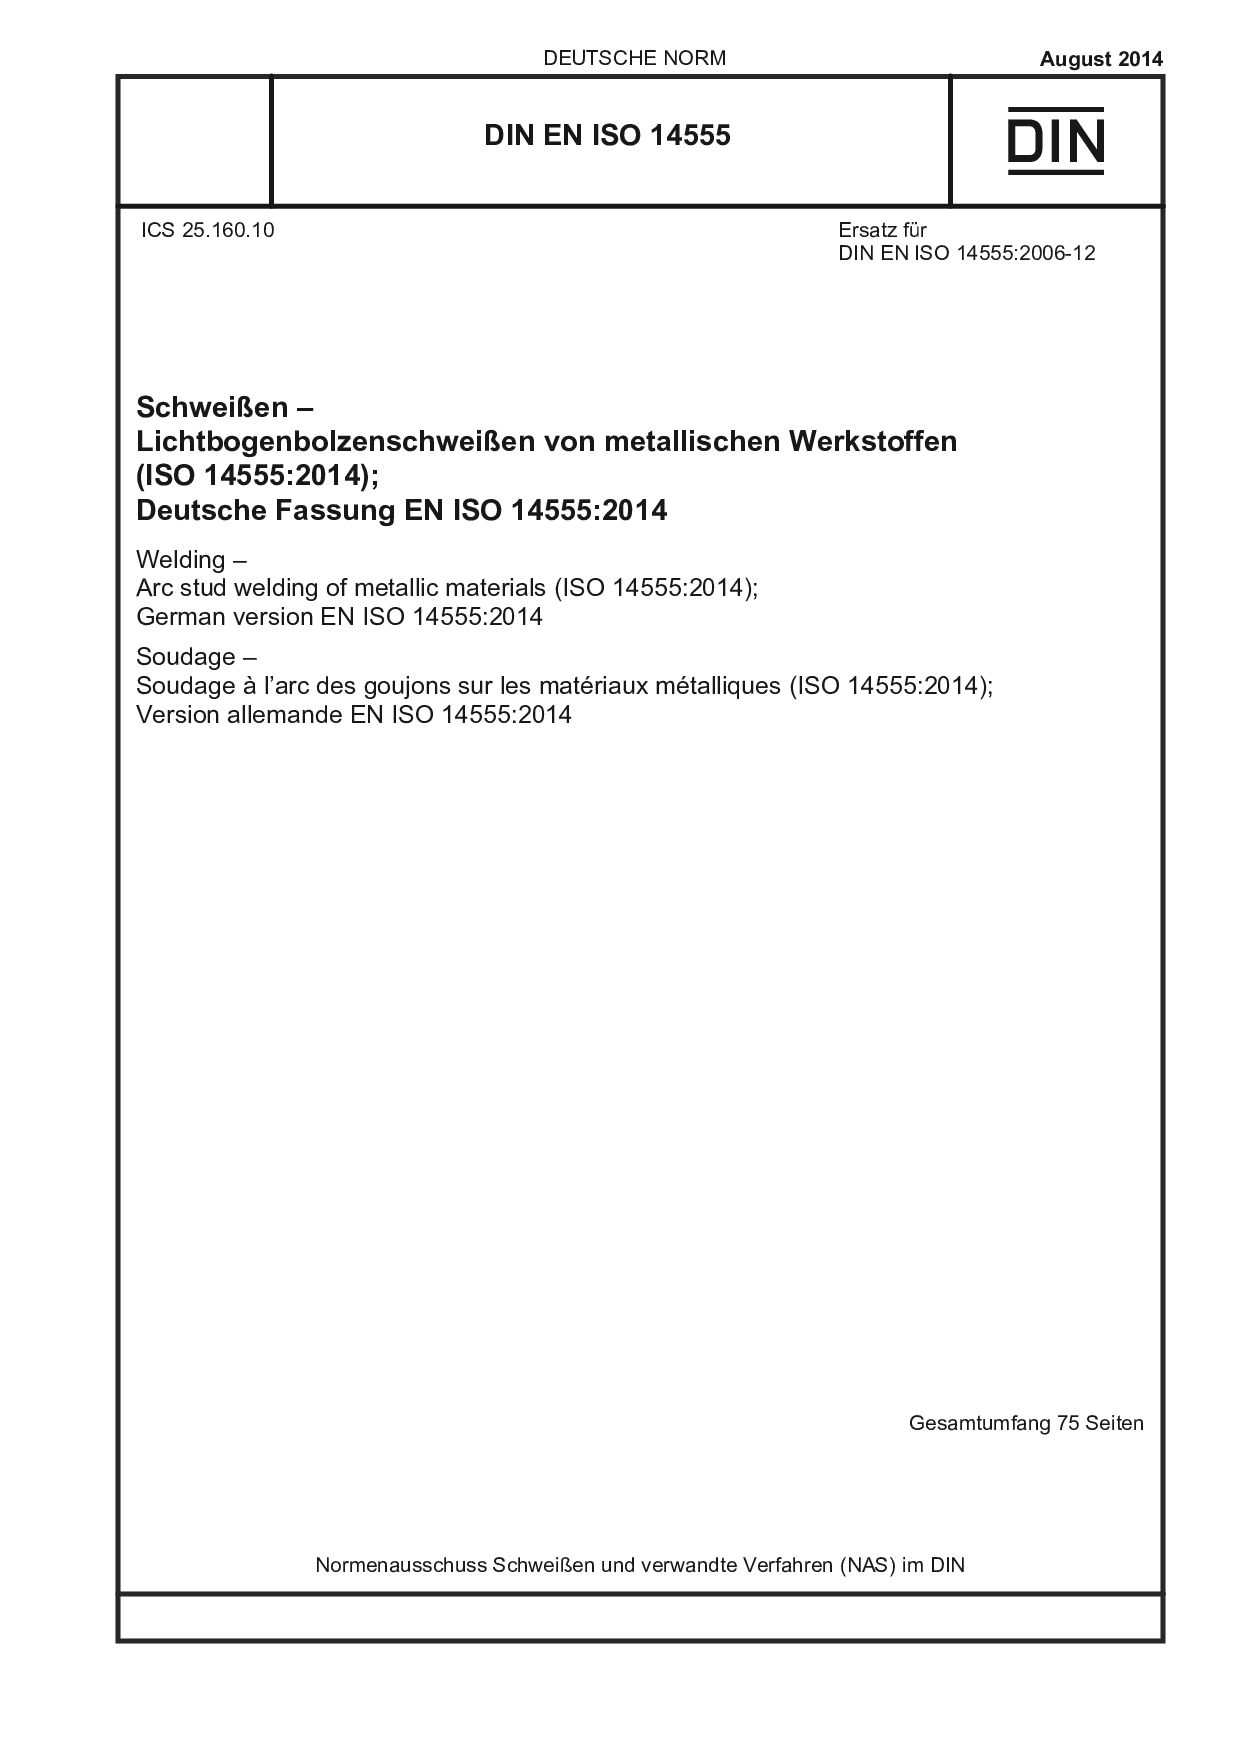 DIN EN ISO 14555:2014